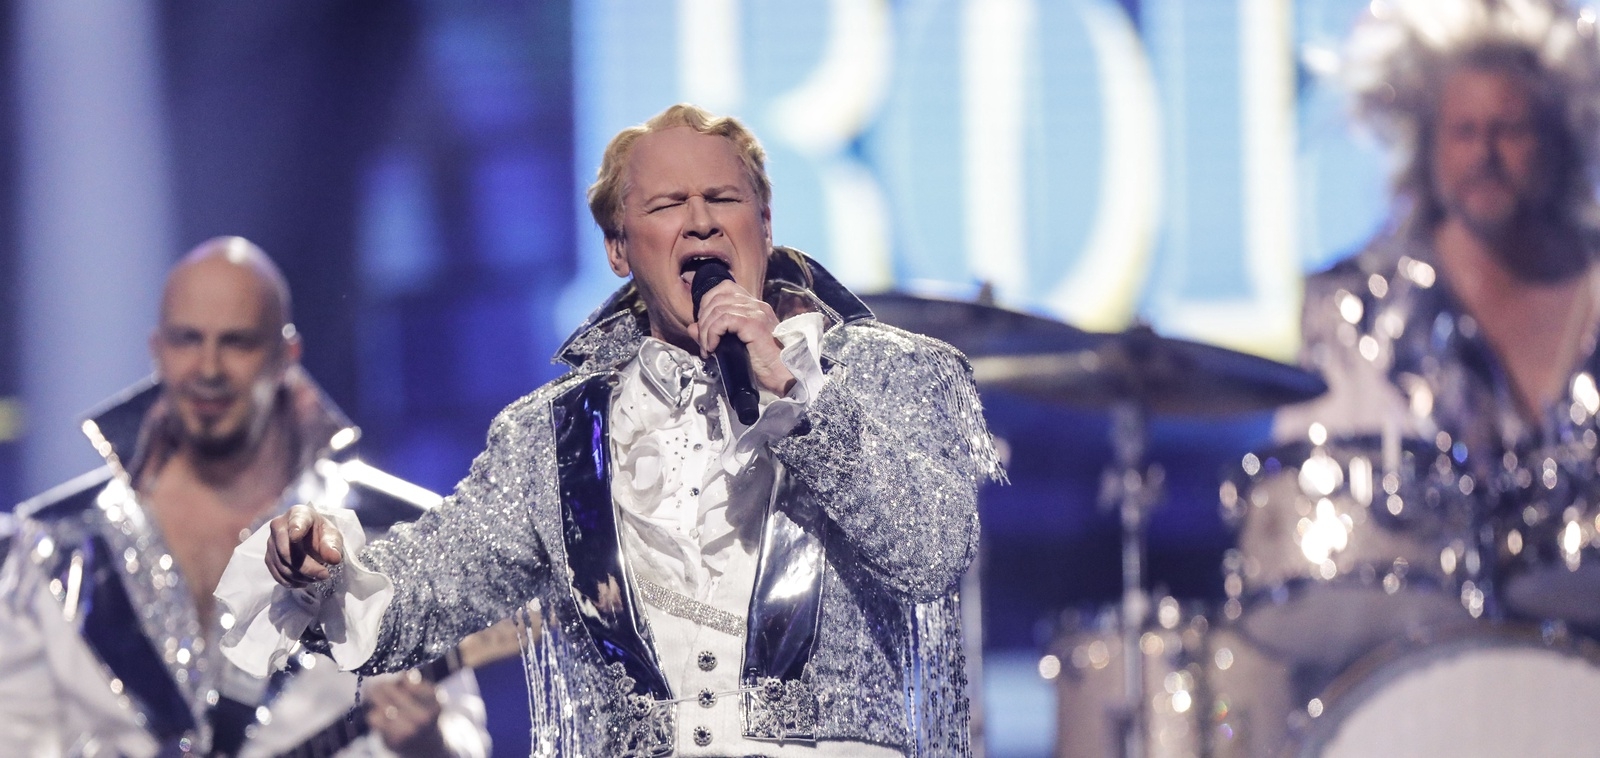 Tidigare i år framförde
Rolandz sin låt "Fuldans" på Melodifestivalen.
Foto Christine Olsson / TT kod 10430